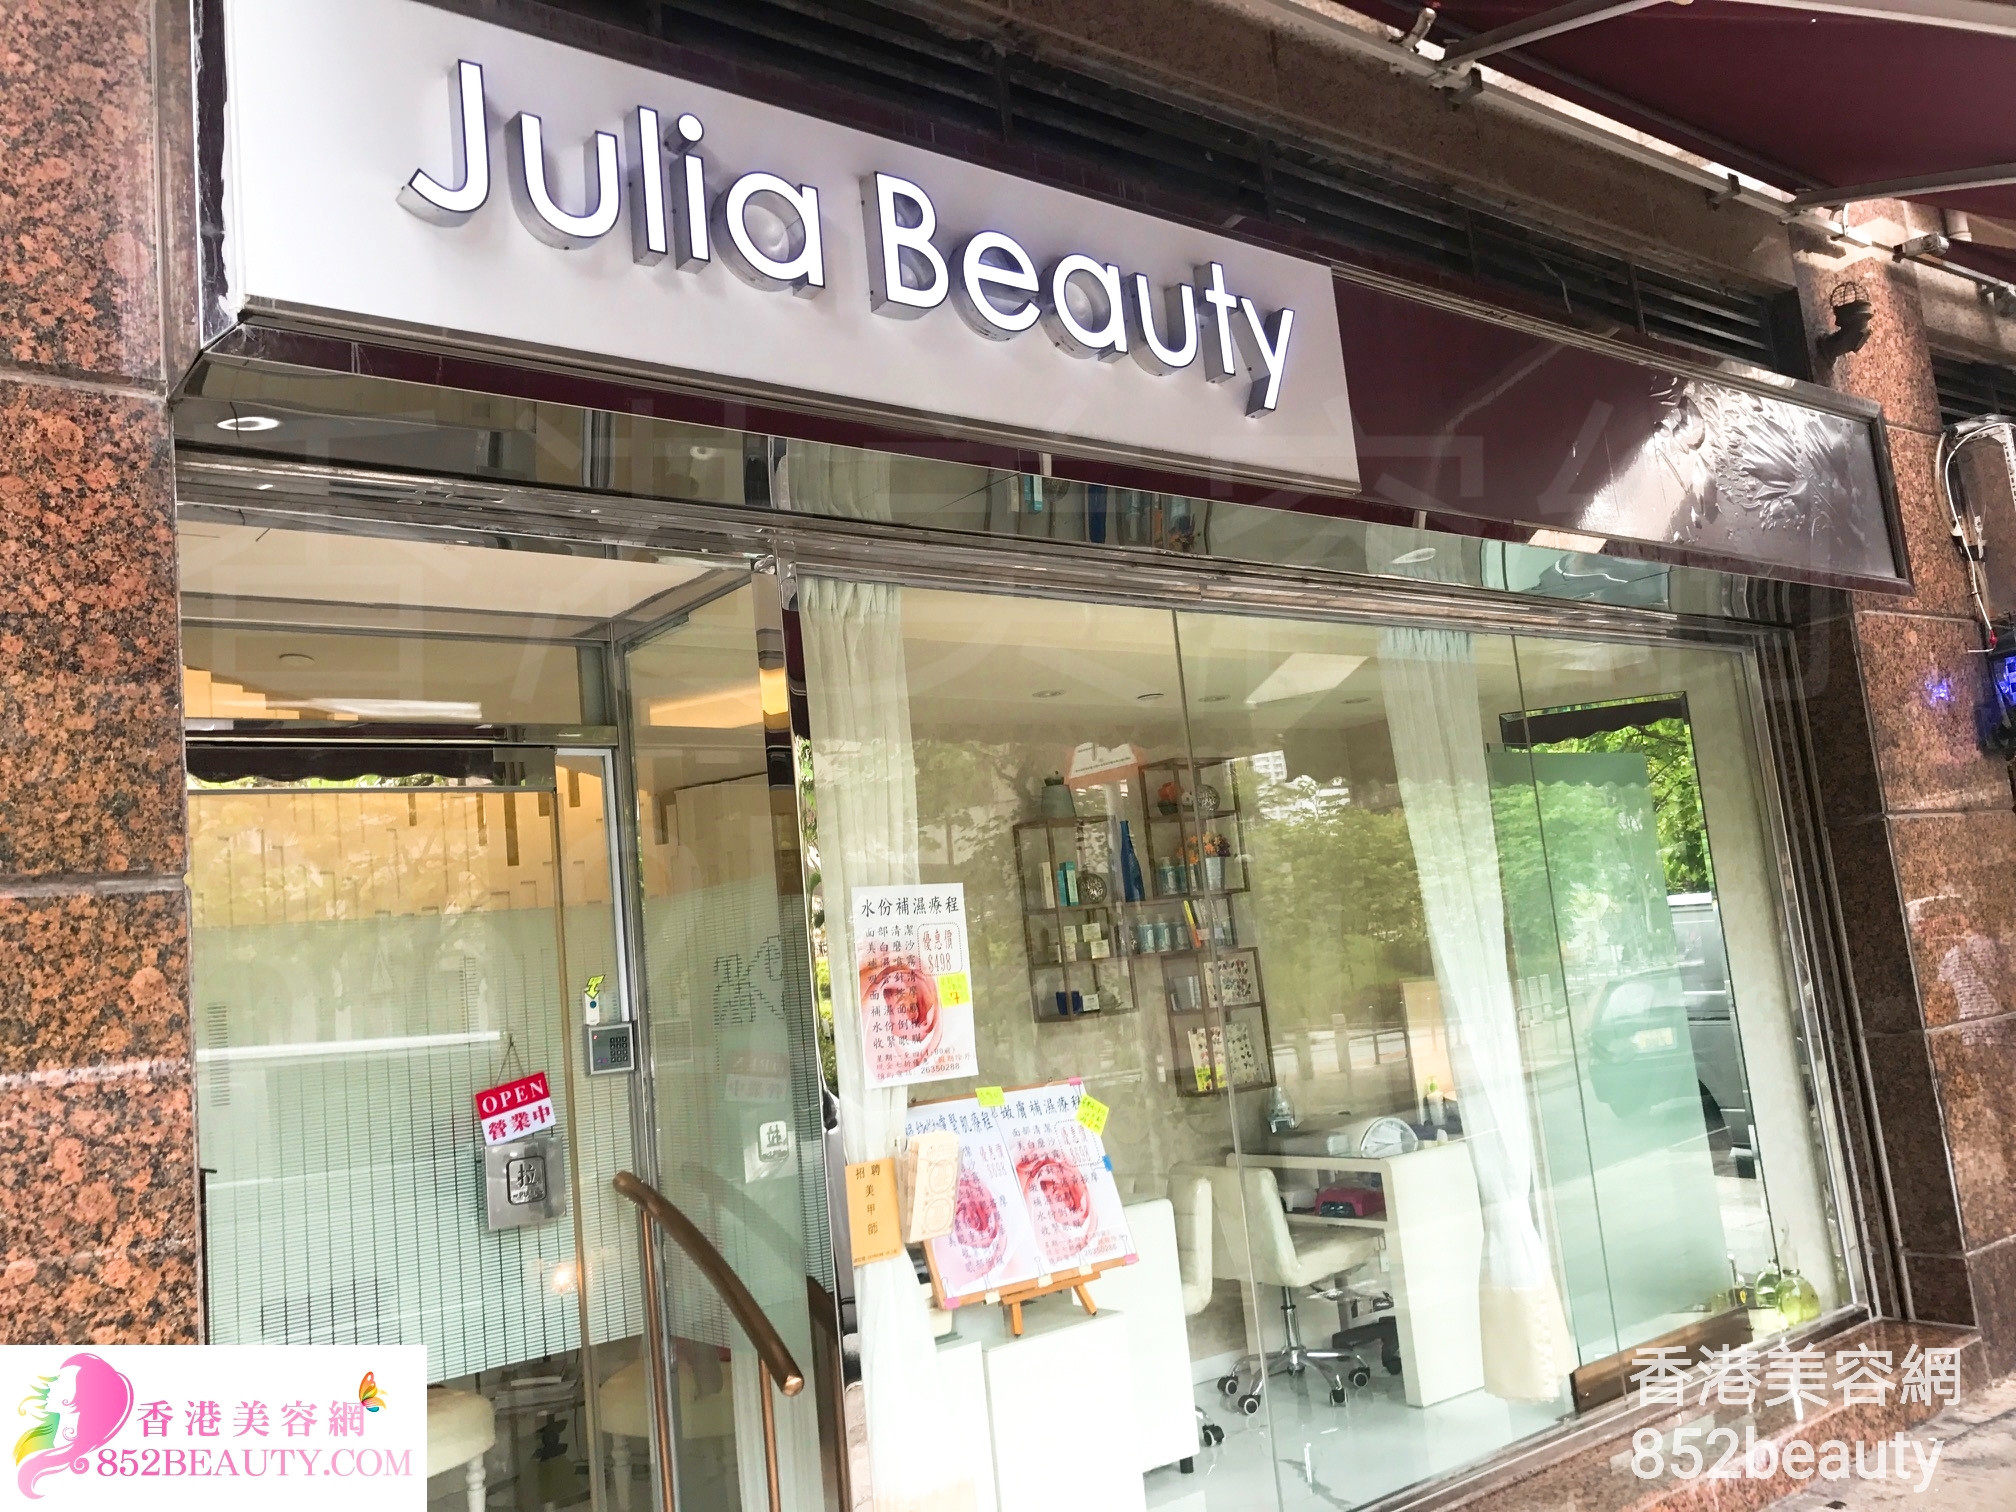 香港美容網 Hong Kong Beauty Salon 美容院 / 美容師: Julia Beauty